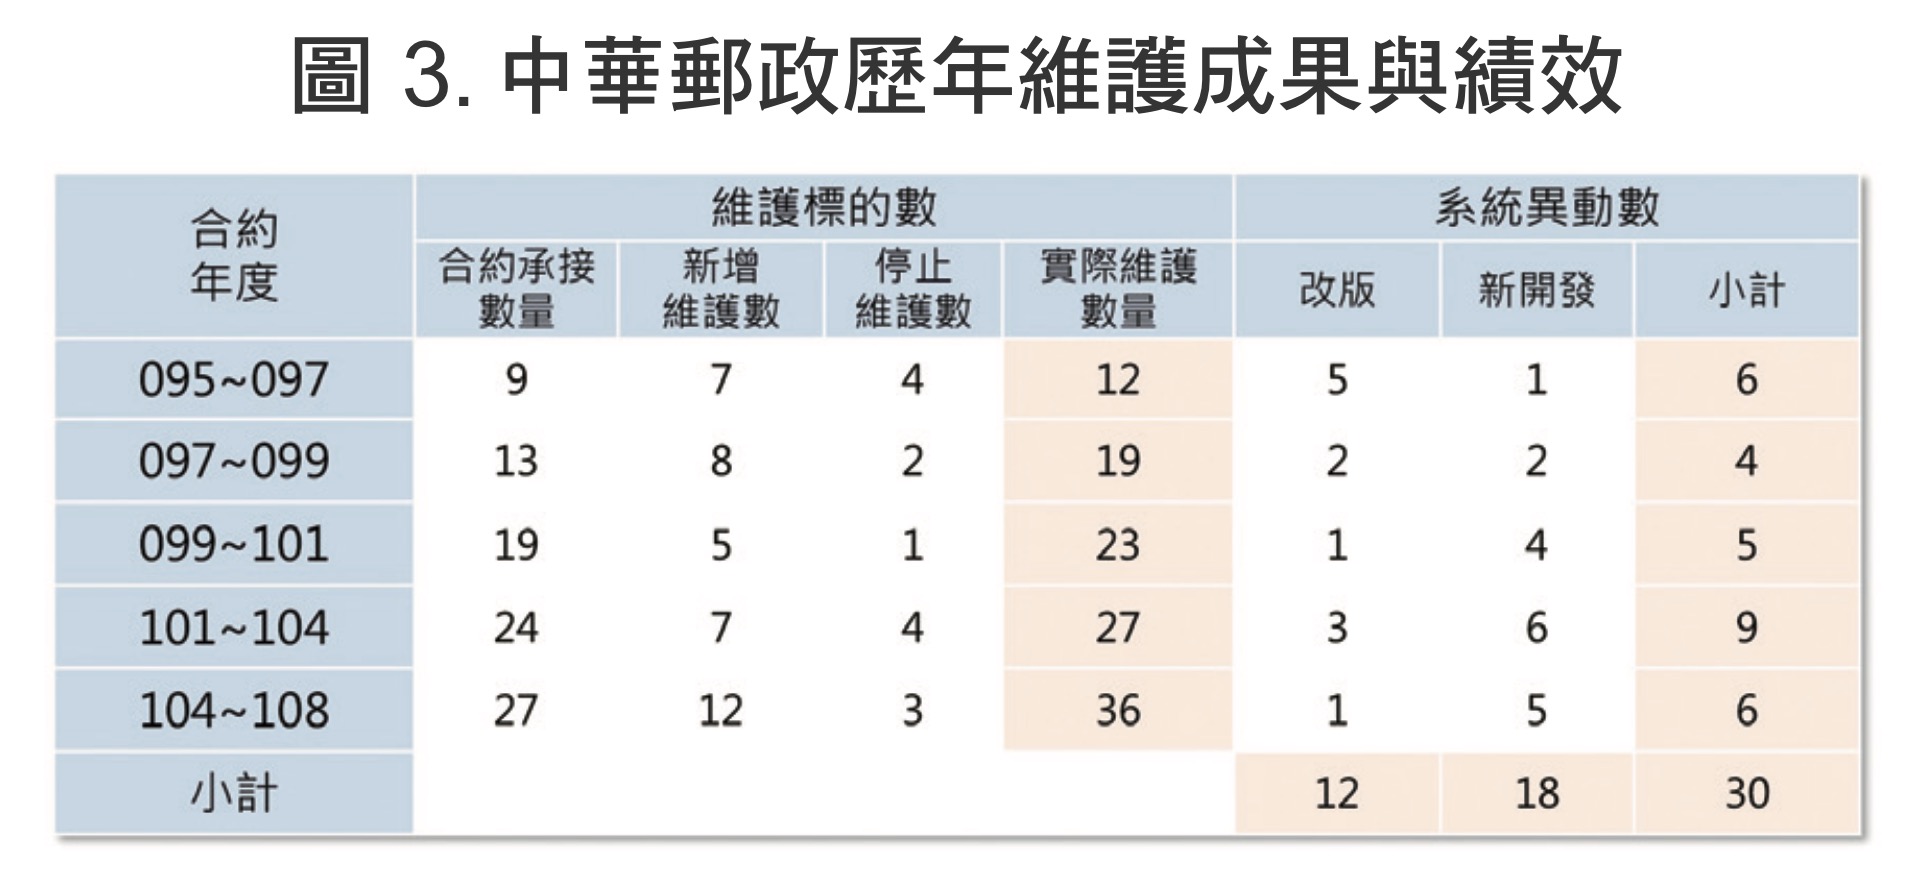 圖 3. 中華郵政歷年維護成果與績效